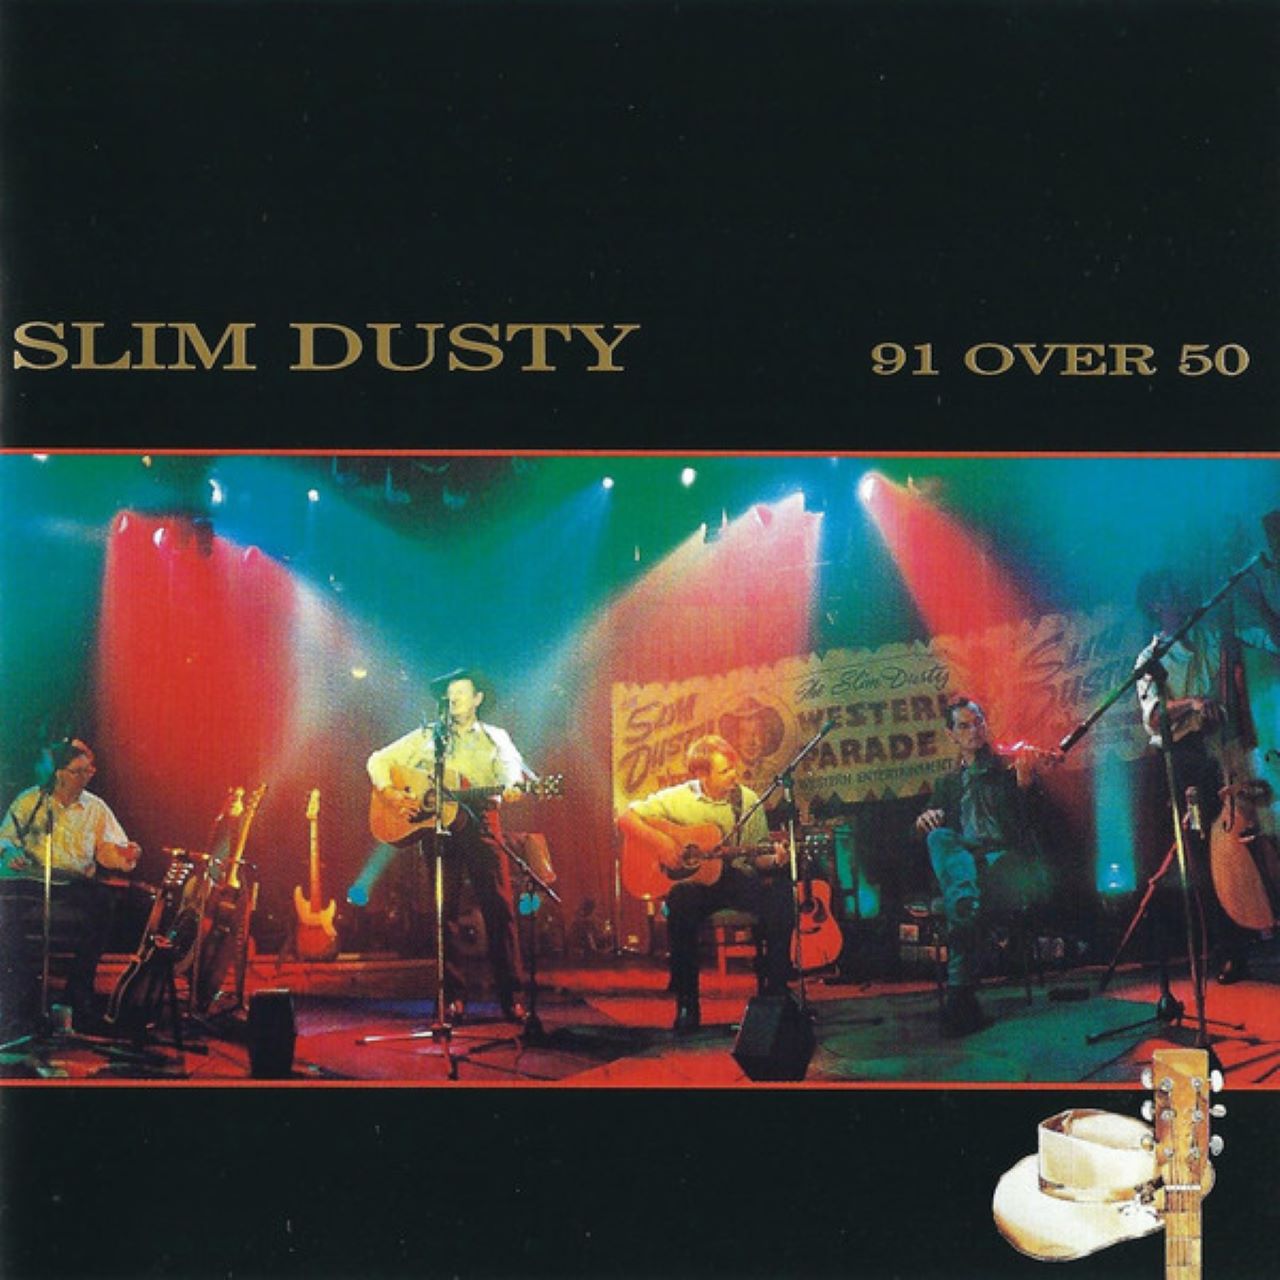 Slim Dusty - 91 over 50 cover album